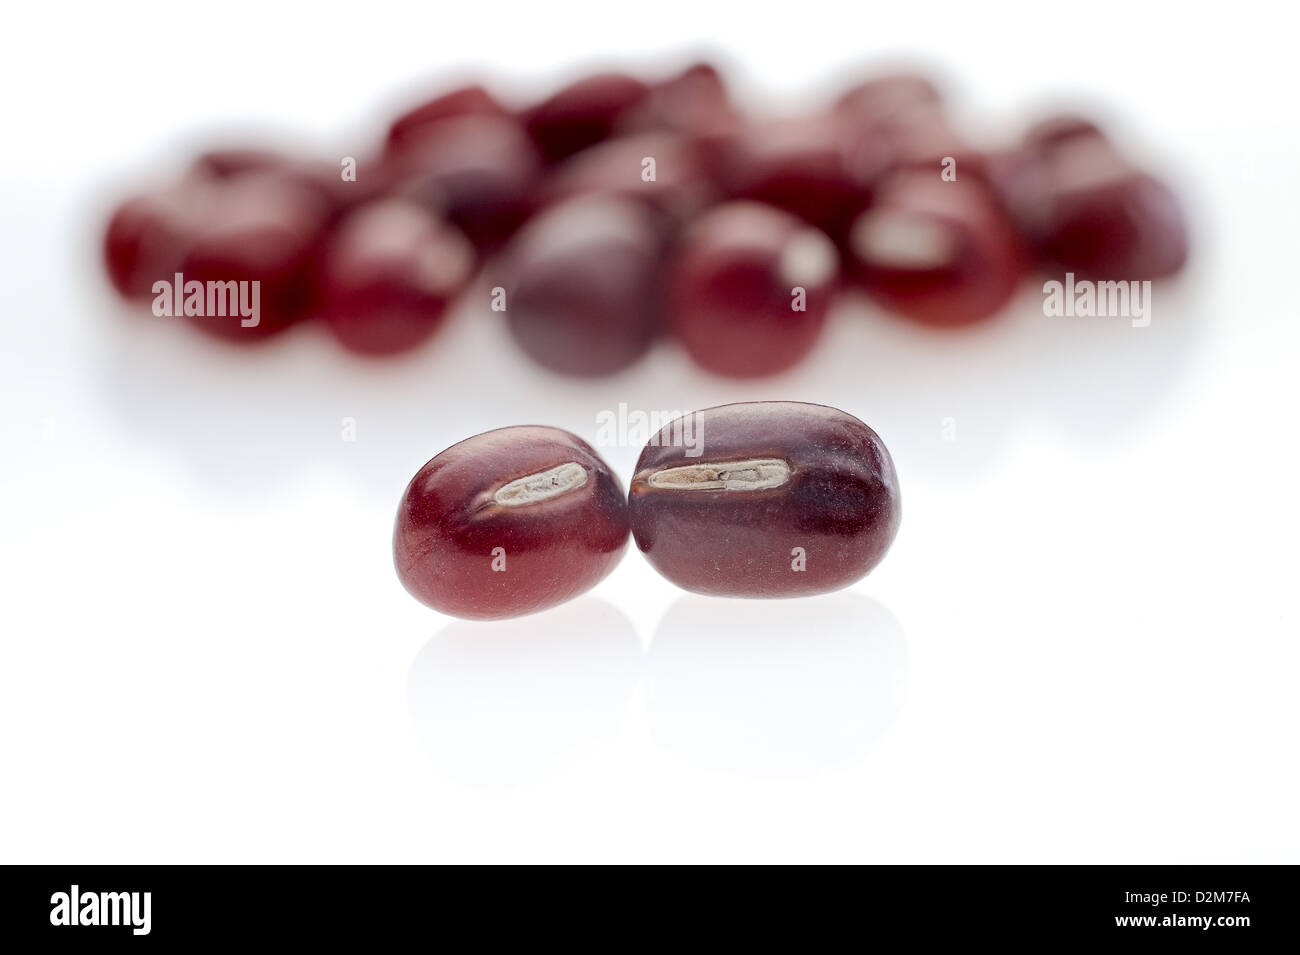 Adzuki Beans on seamless white background with shadow. Stock Photo